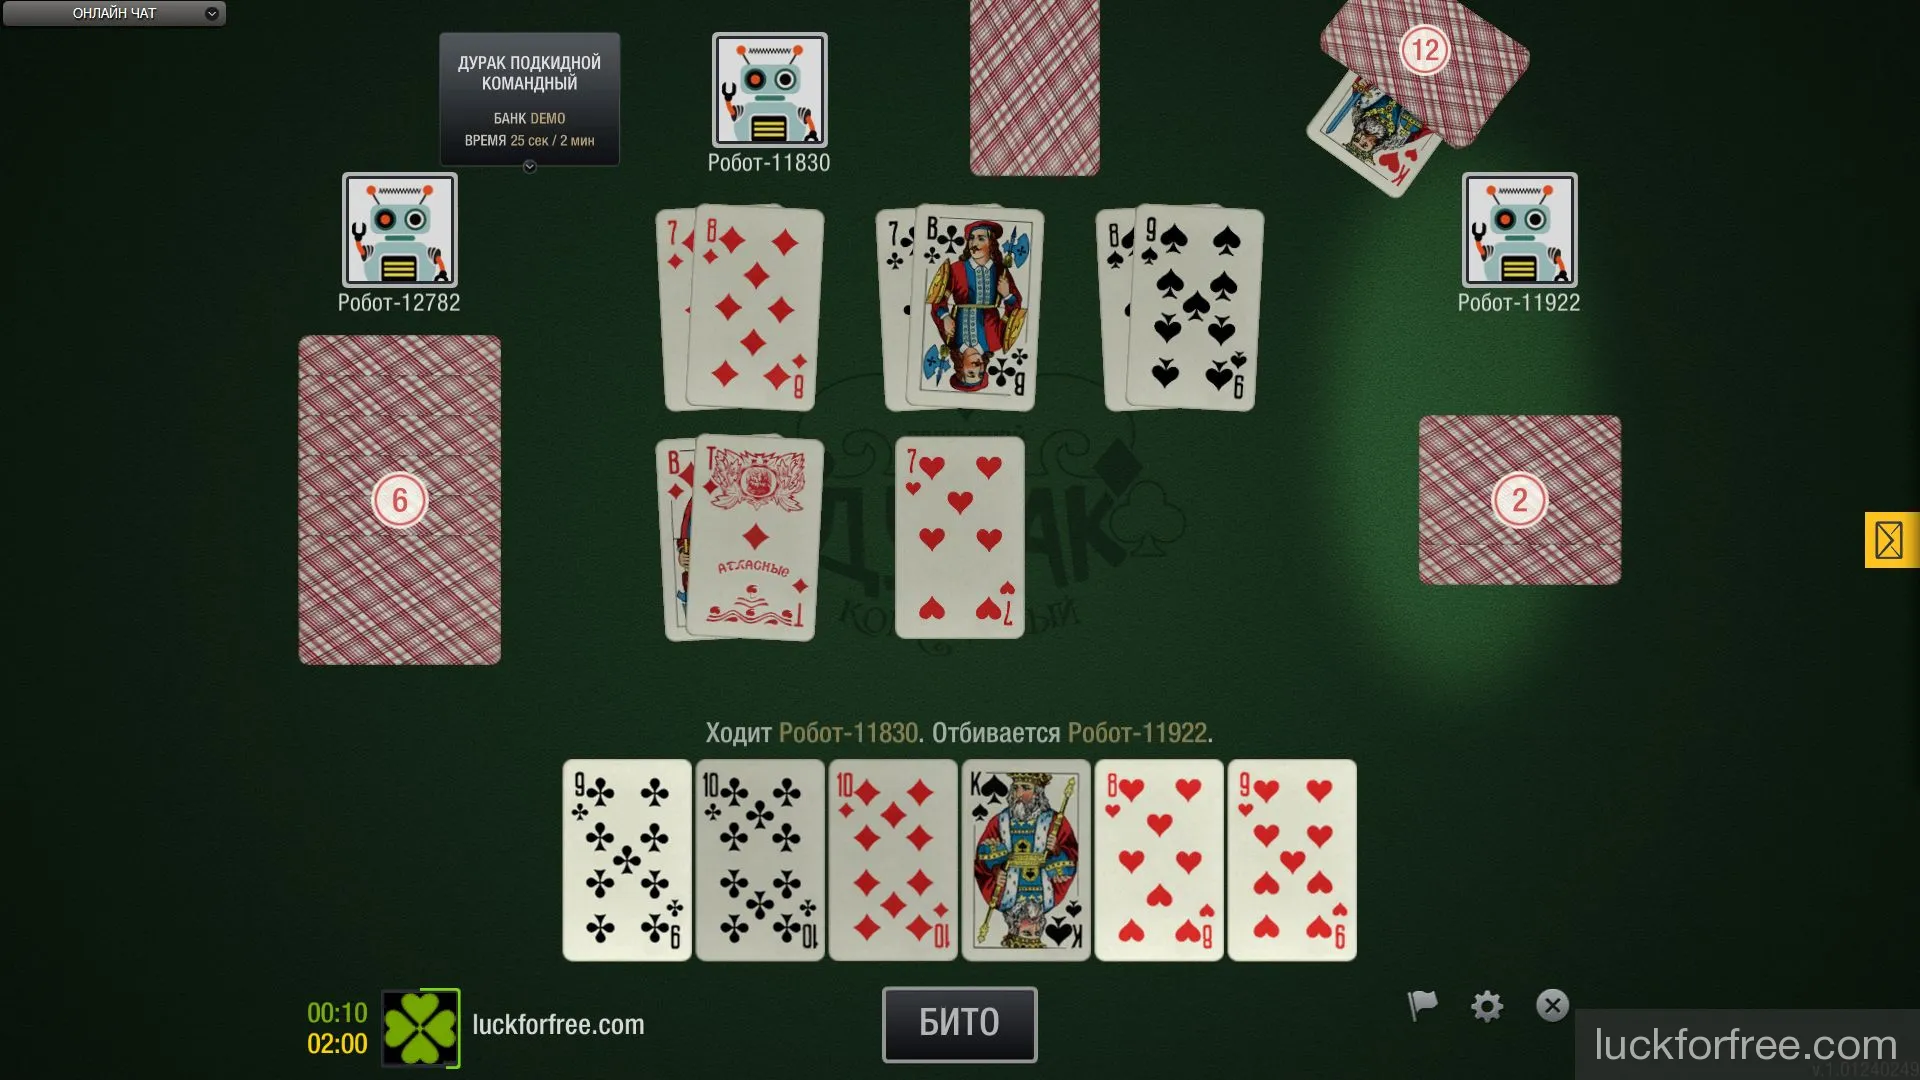 Дурак онлайн лучше чем покер играть приложение фонбет на самсунг 5230